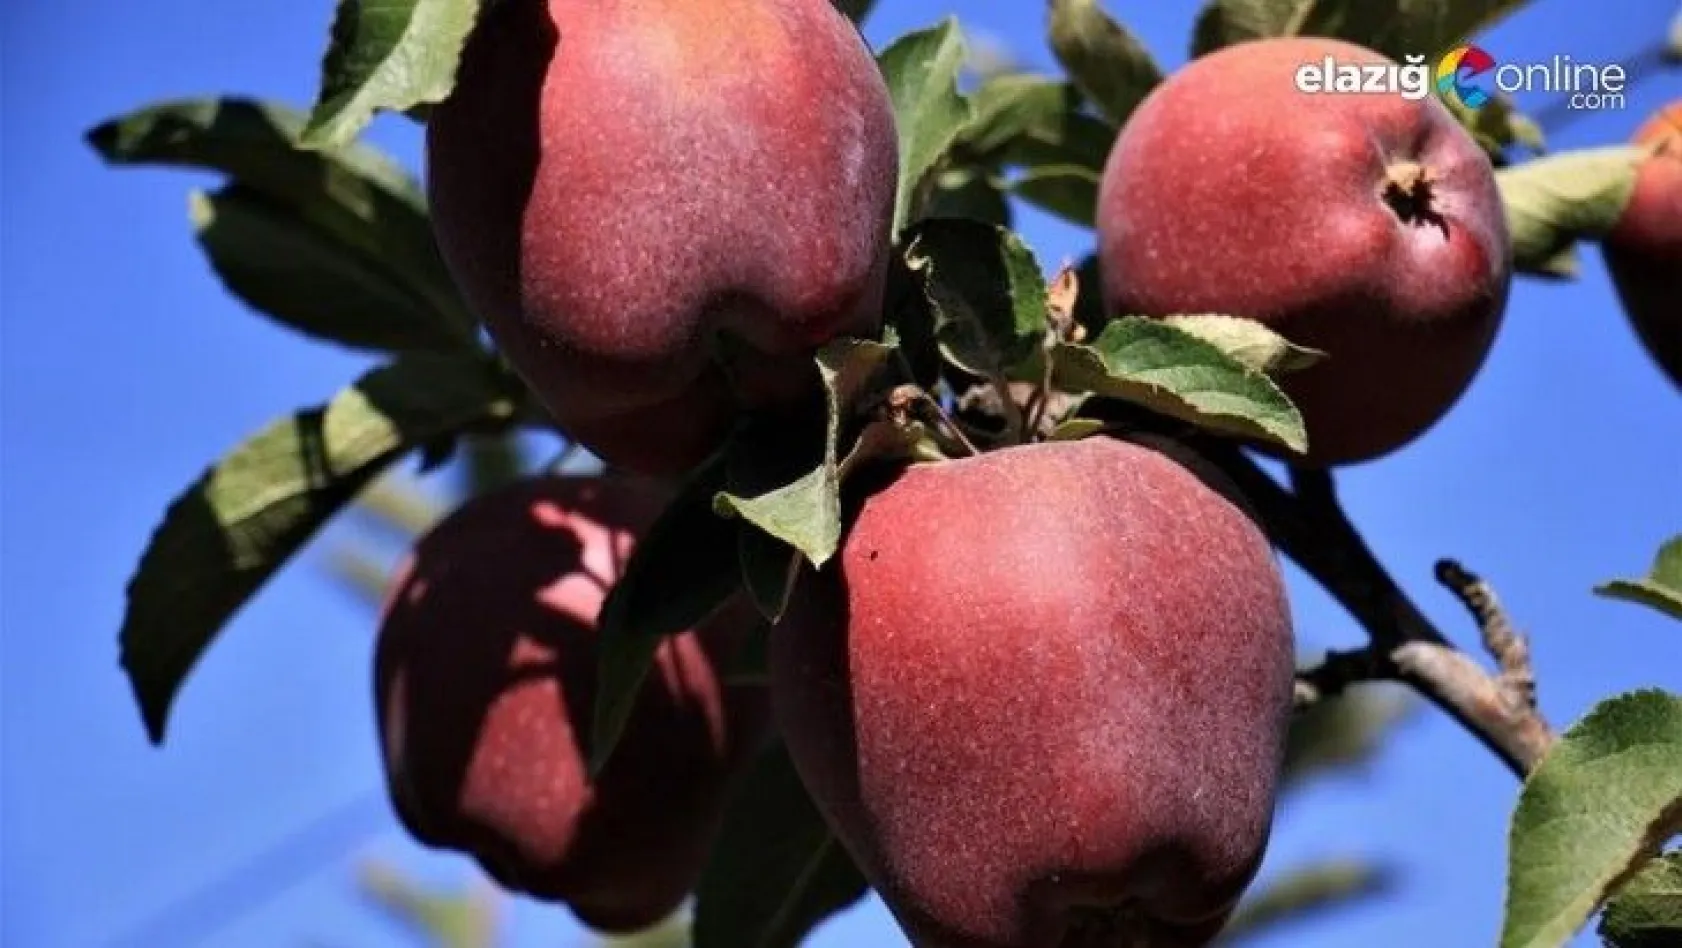 Bir çok tarım ürünü ile ön plana çıkan Elazığ'da, kırmızı elmanın hasadı başladı